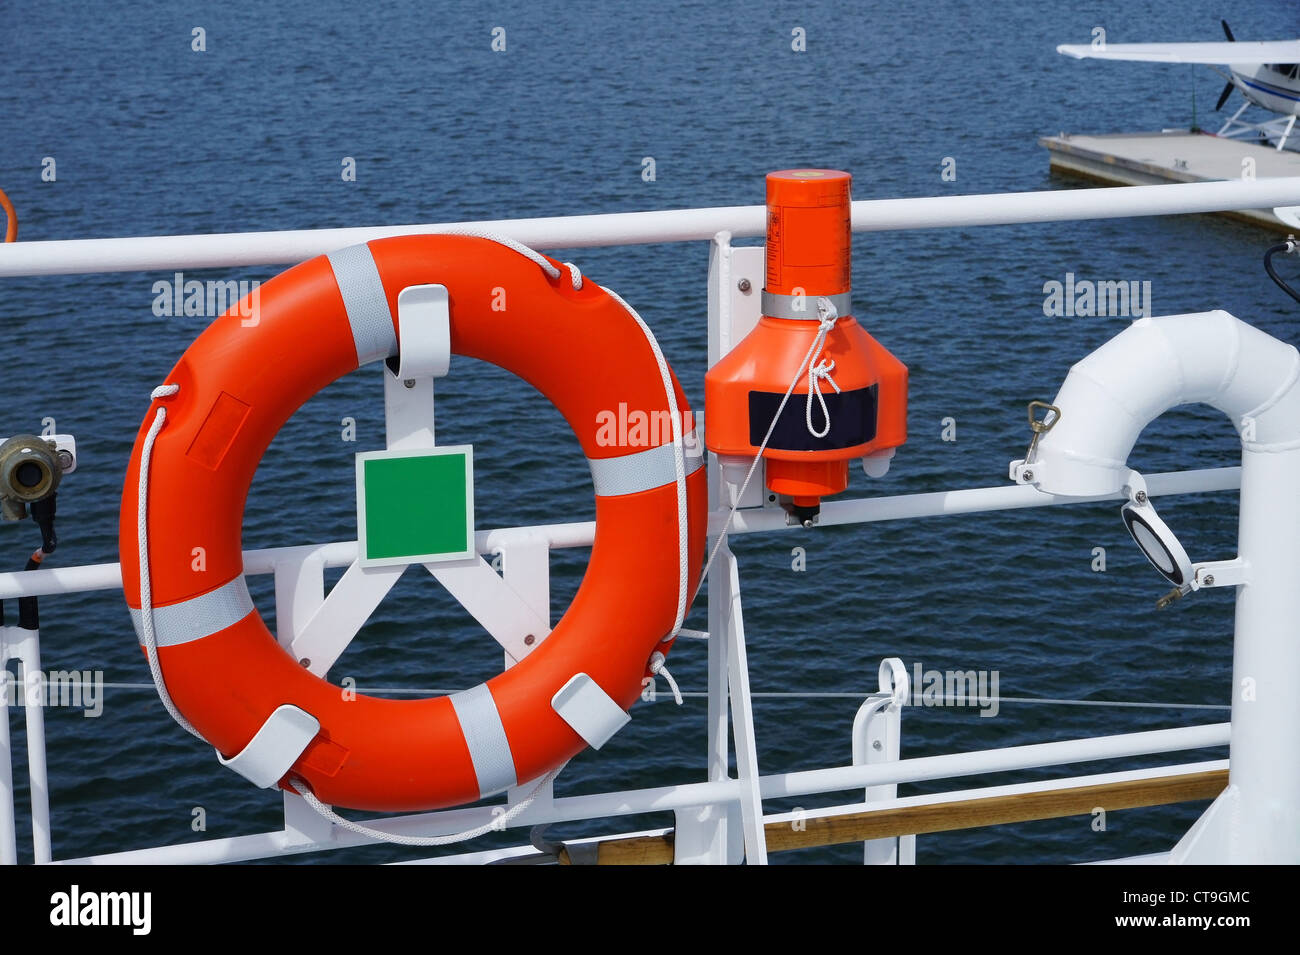 Der Rettungsring Ring auf einem Schiff ist in freien Platz Stockfotografie  - Alamy